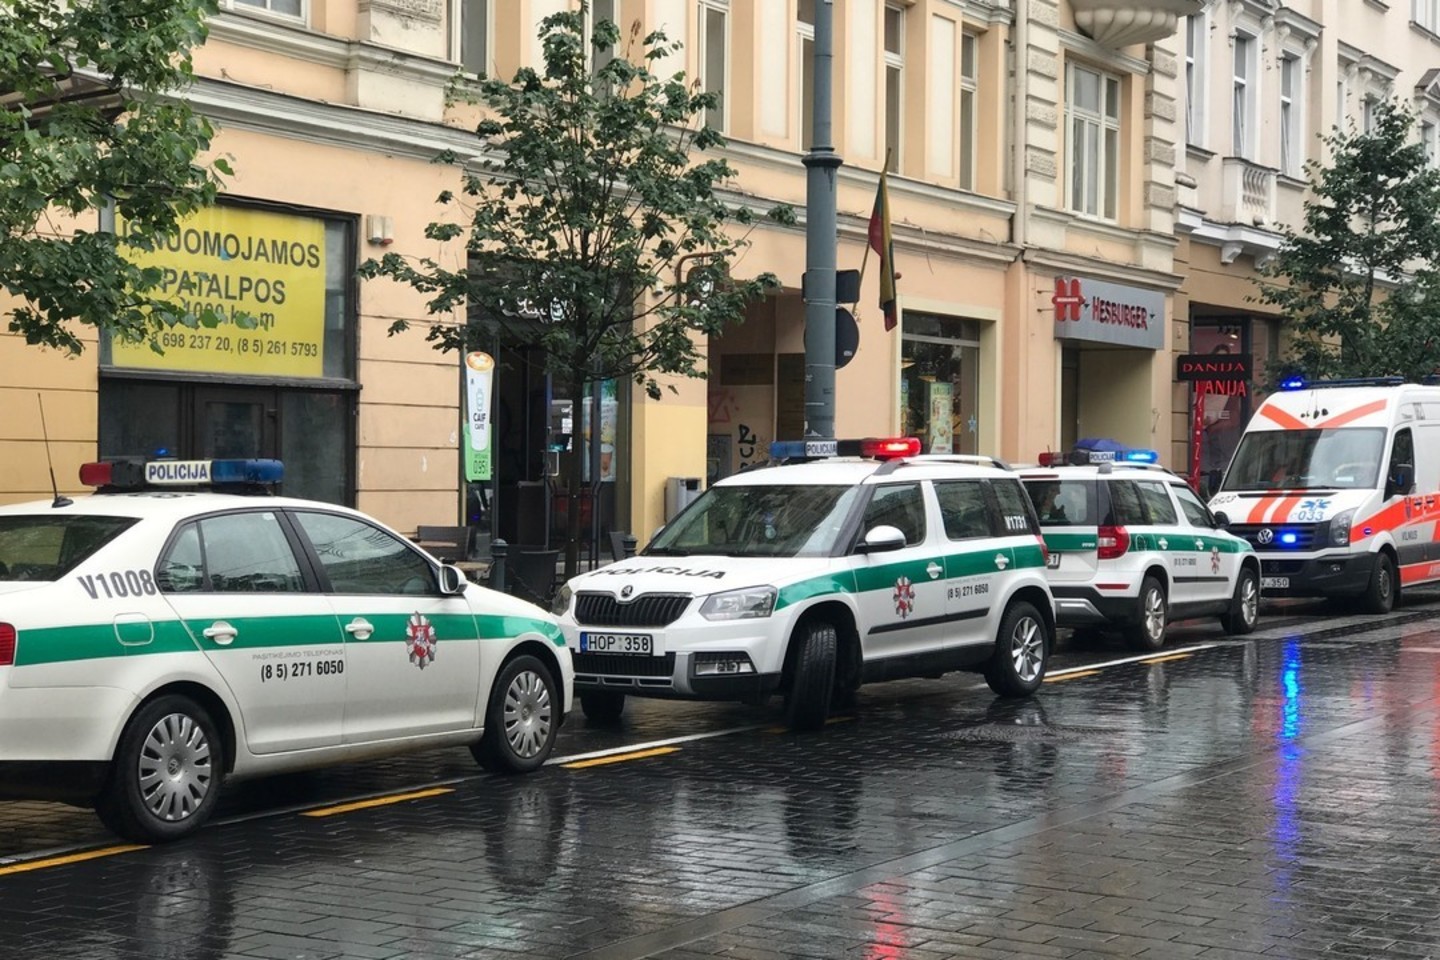  Restorano tualete Vilniaus centre rastas vyras galėjo mirti nuo narkotikų.<br> V.Ščiavinsko nuotr.